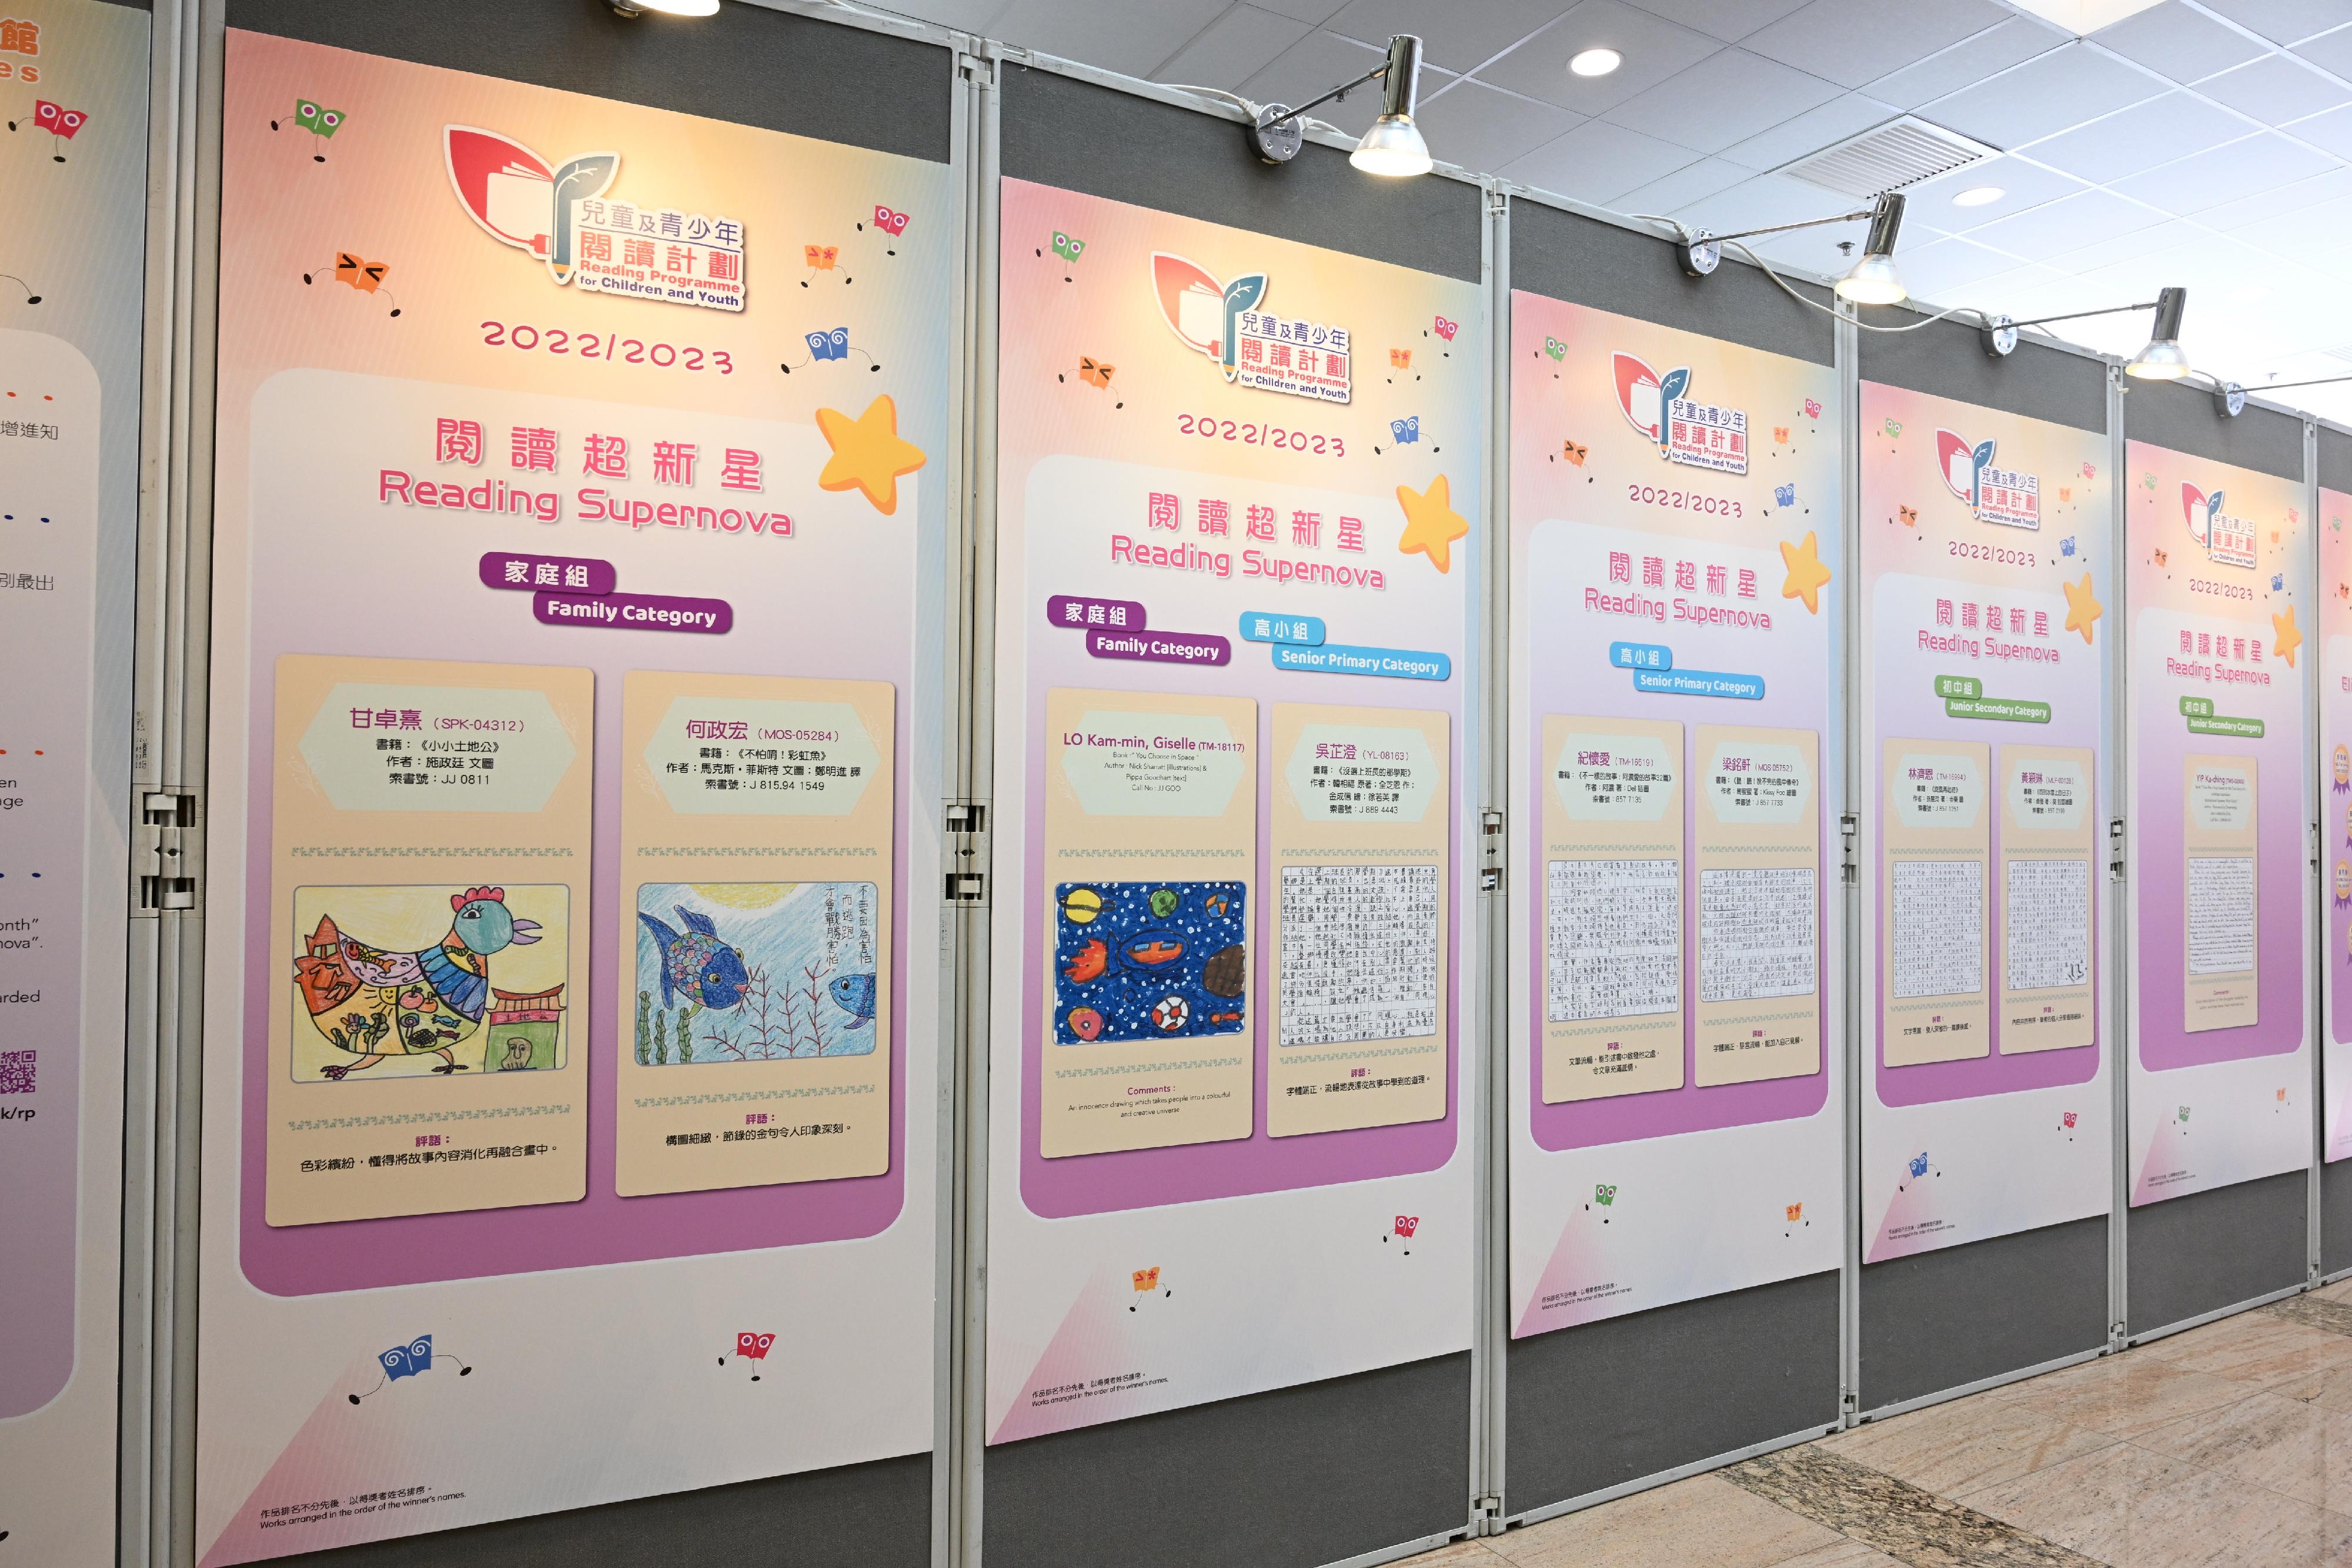 二○二二／二三年度「兒童及青少年閱讀計劃」的「閱讀超新星」獲奬作品現於香港中央圖書館地下南門大堂展出至十一月二十二日。有關作品亦會於多間香港公共圖書館作巡迴展覽。